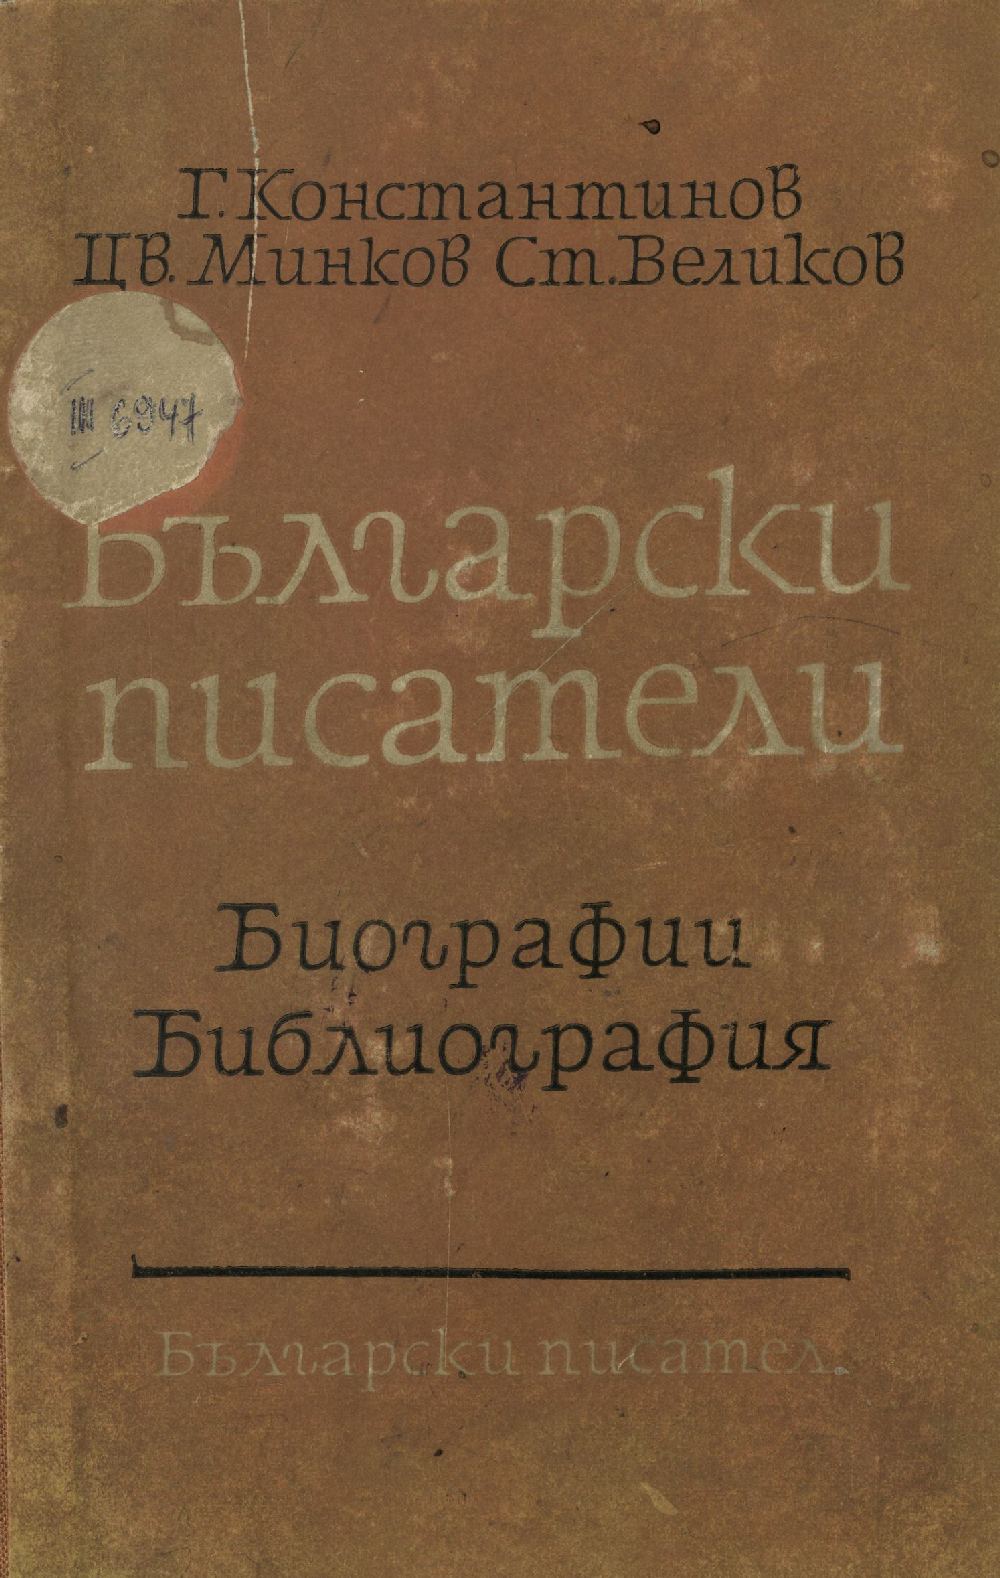 Български писатели. Биографии. Библиография